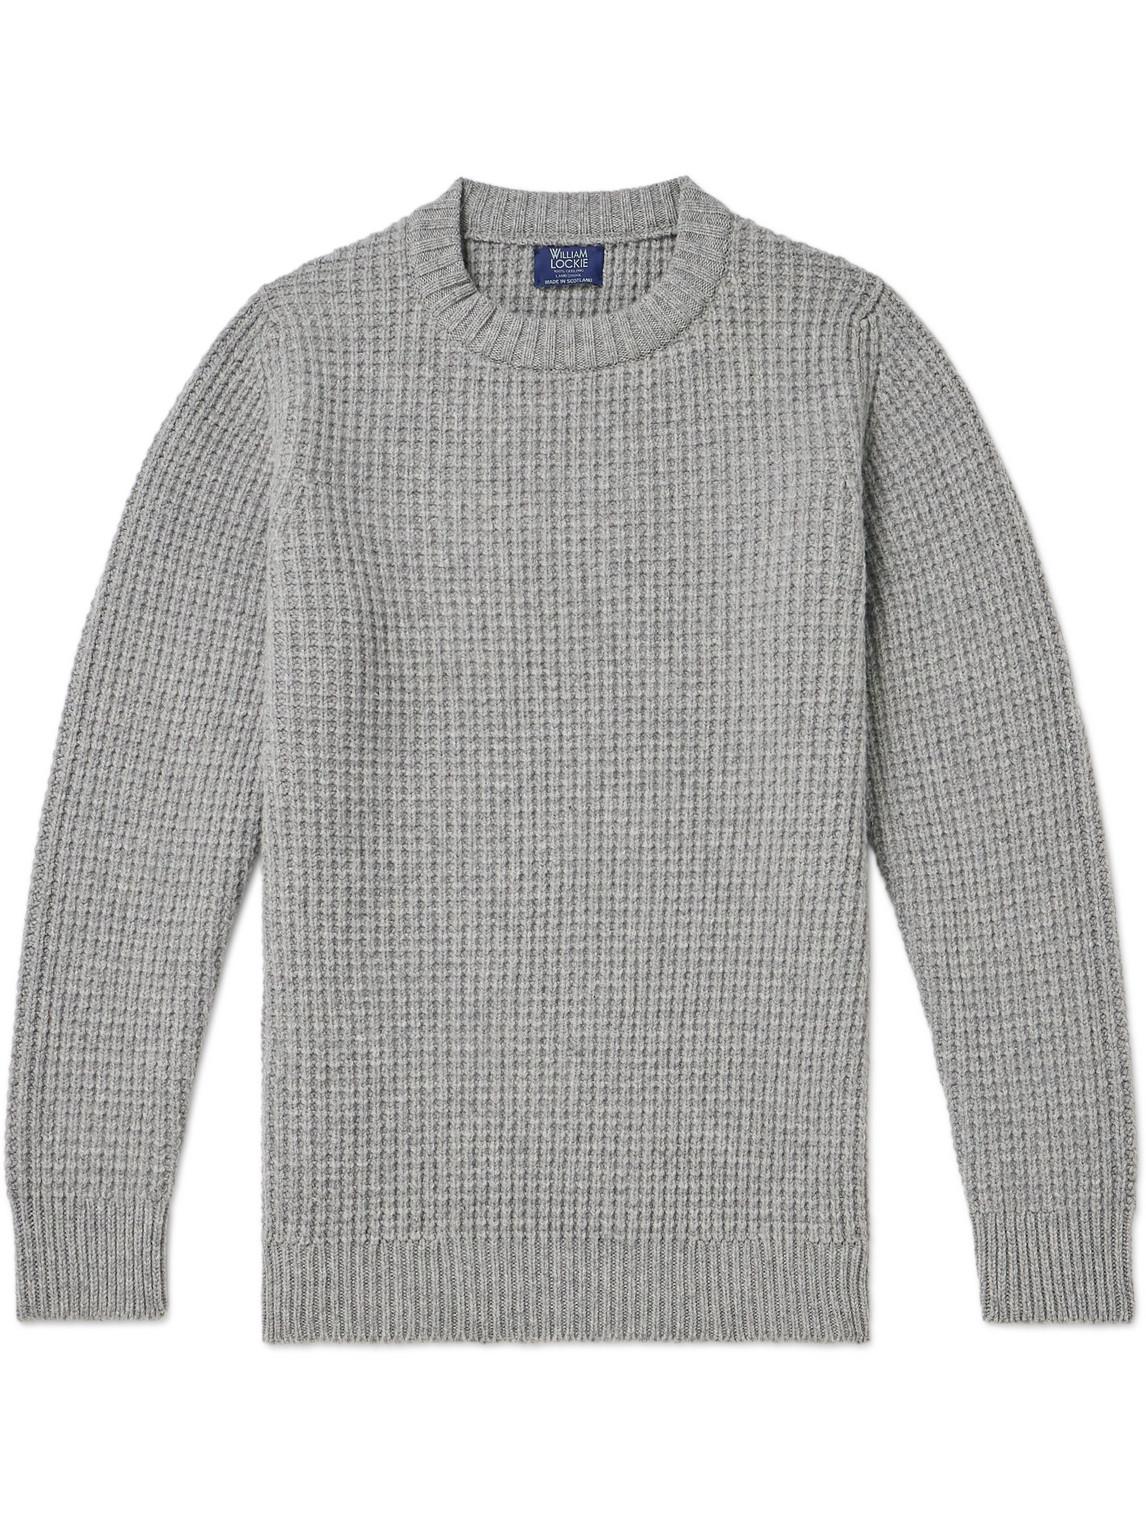 William Lockie Cliveden Waffle-knit Wool Jumper In Grey